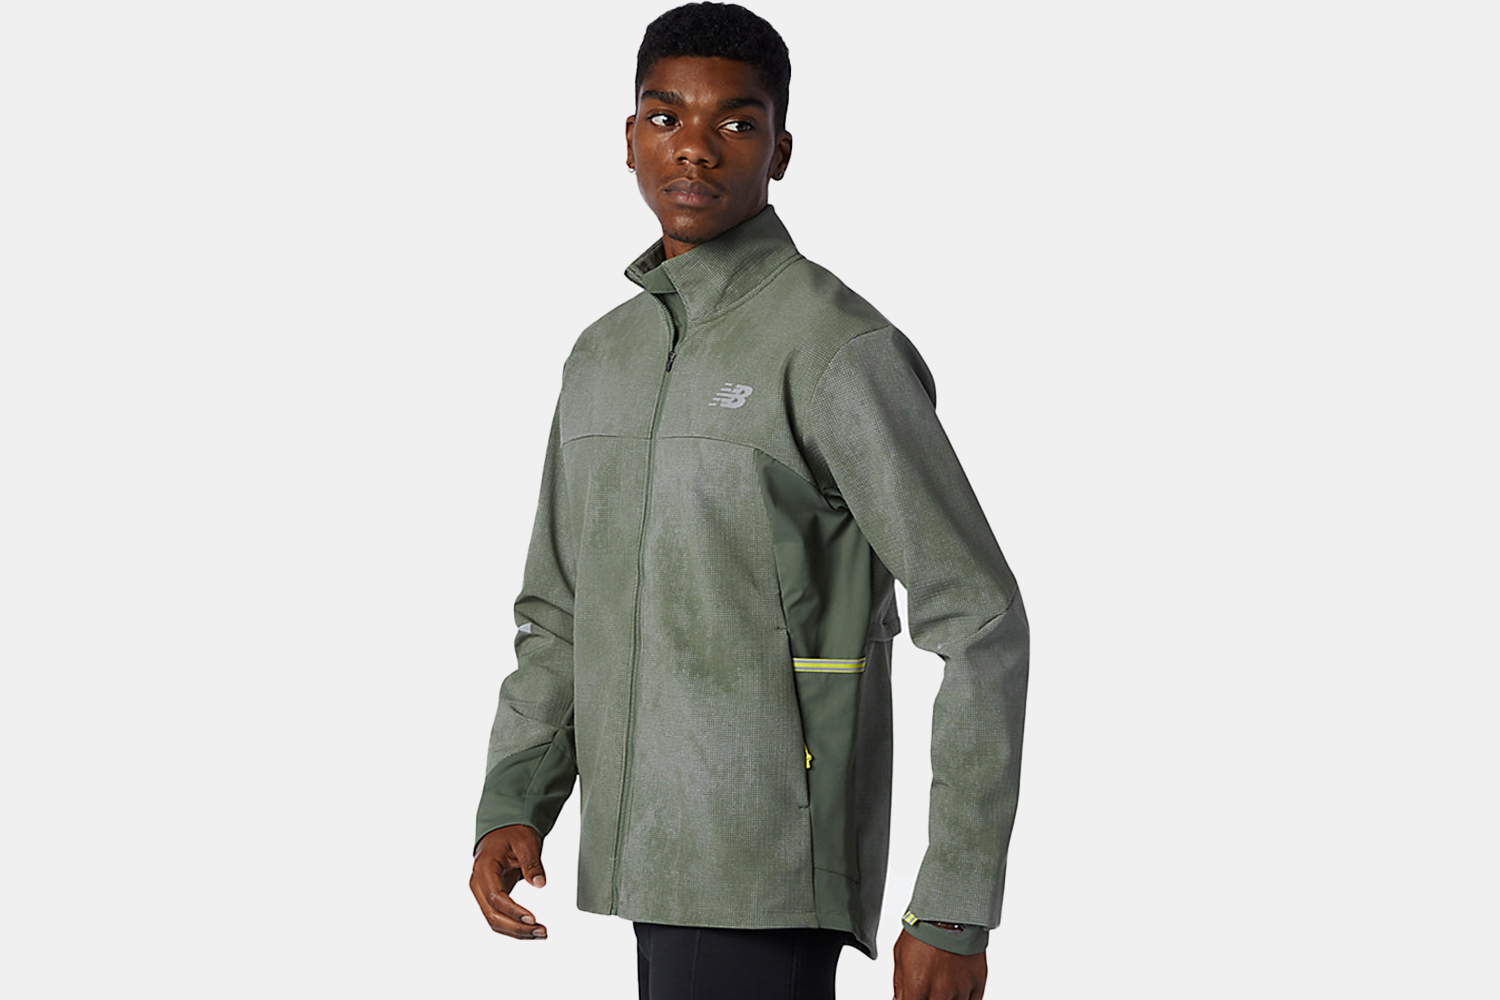 a printed green jacket